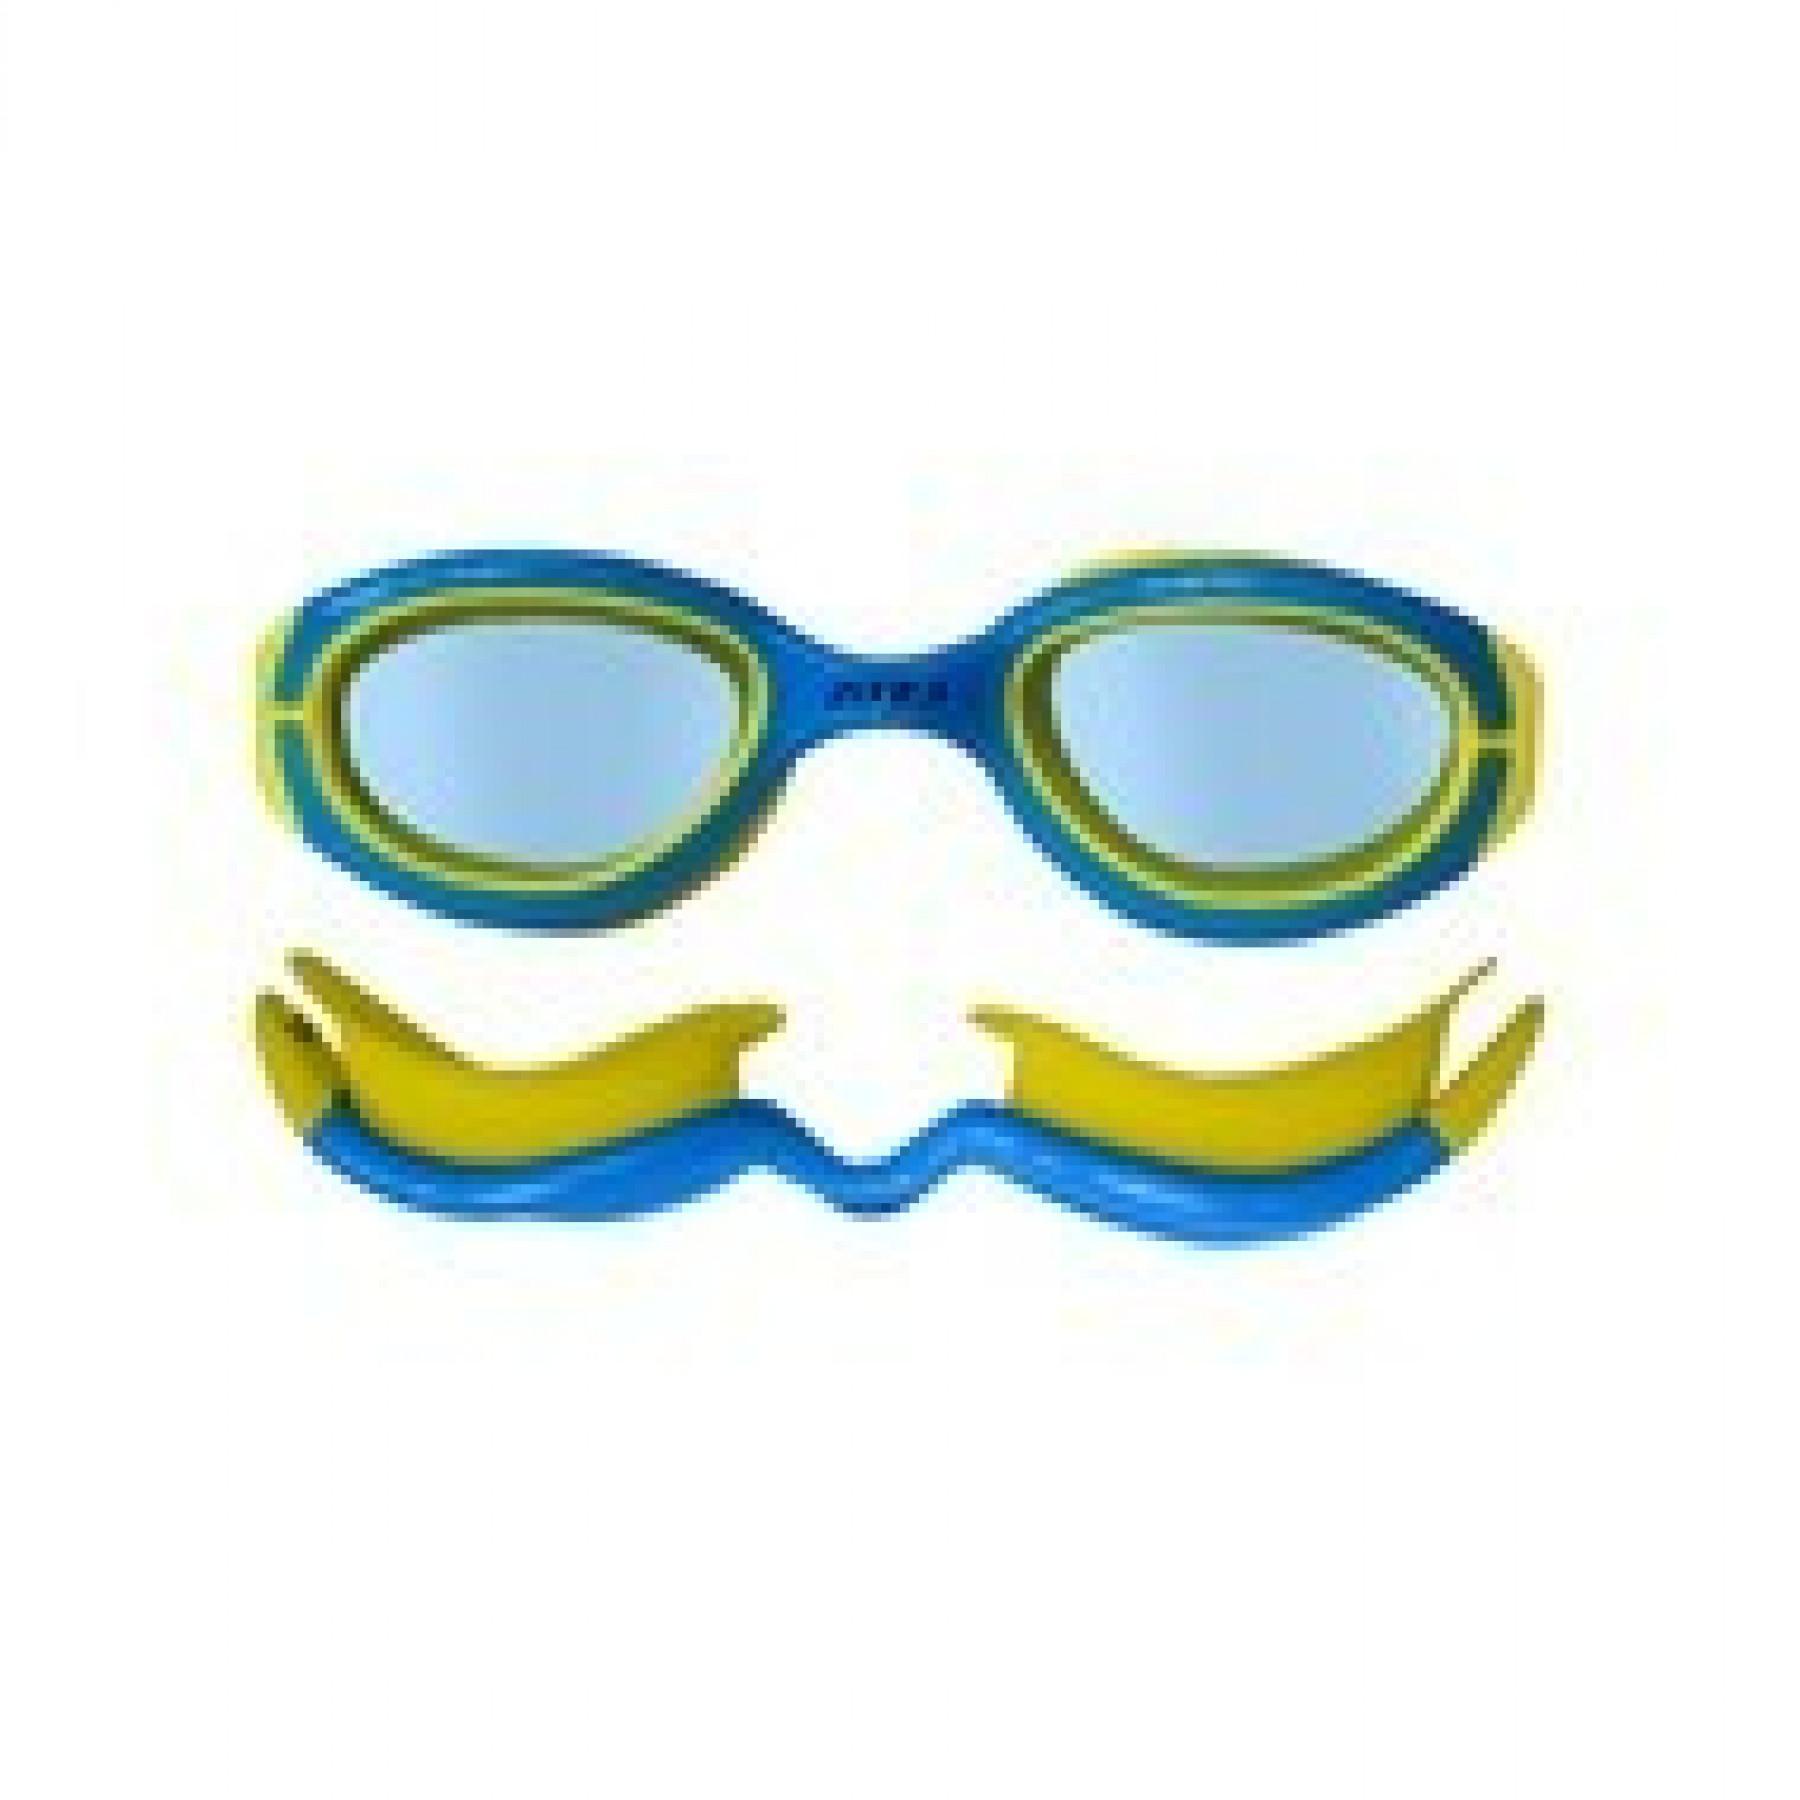 Zwembril voor kinderen Zone3 aquahero verres